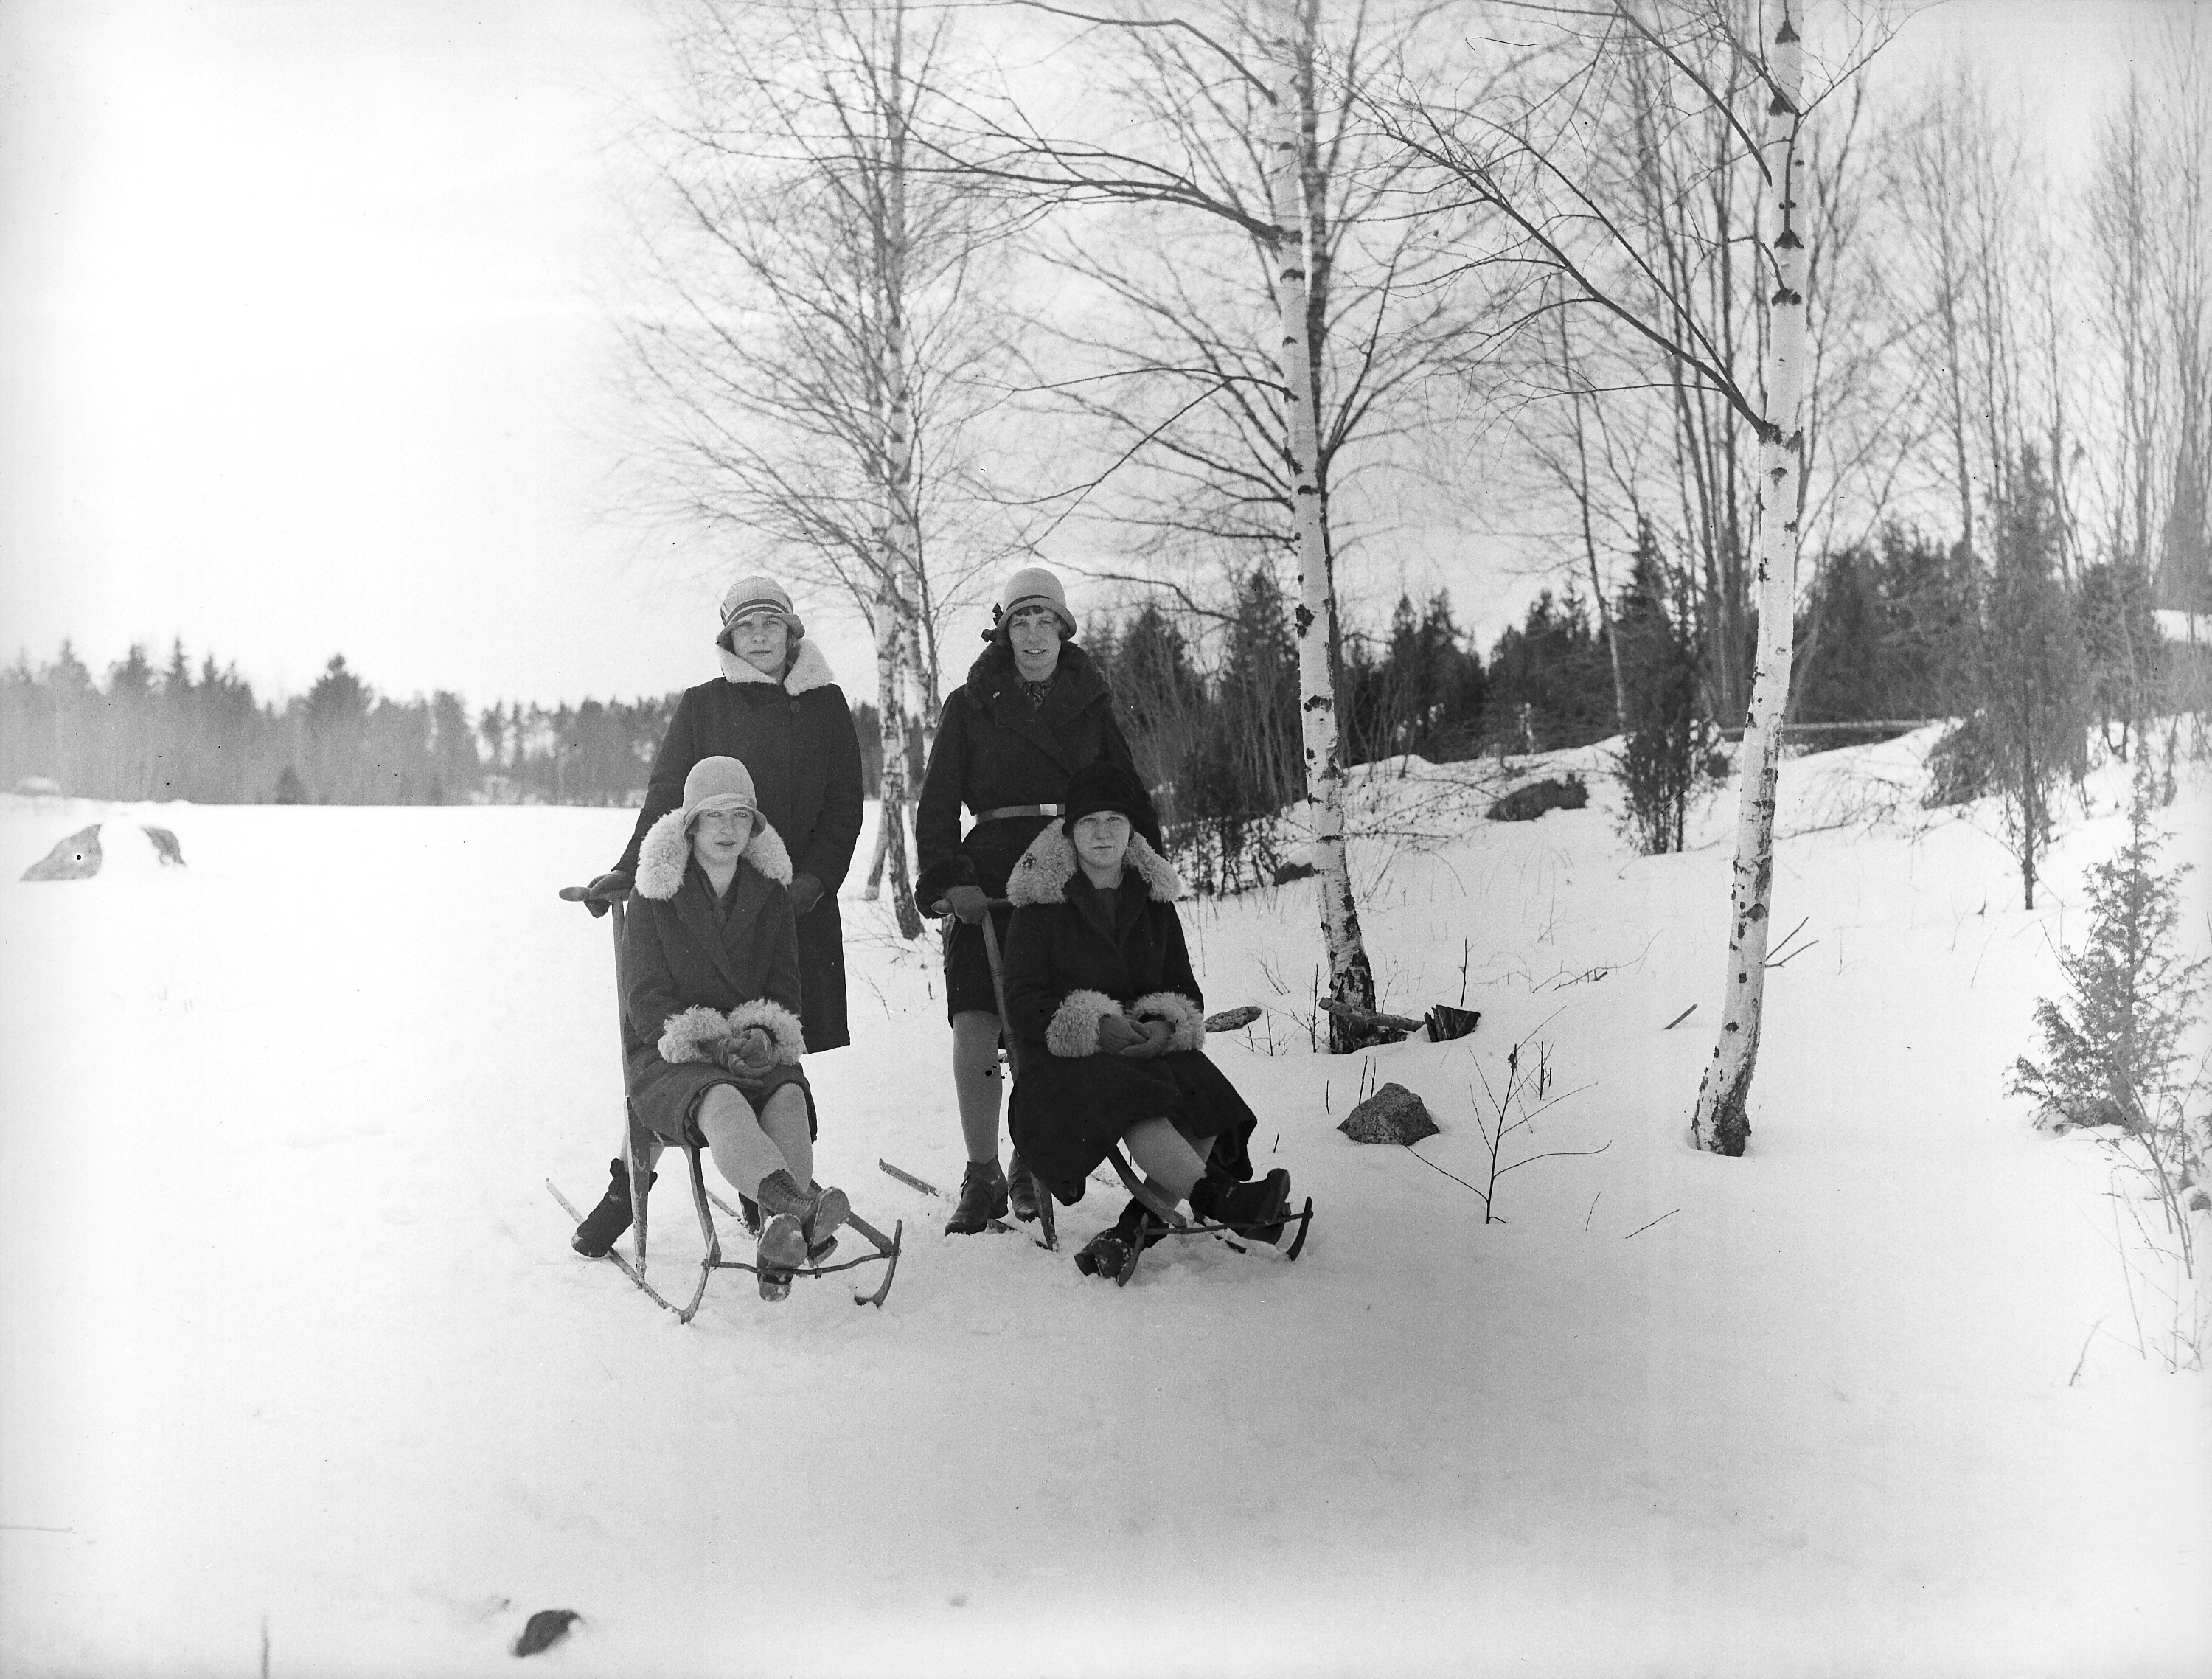 Två kvinnor står bakom två andra kvinnor som sitter på varsin spark, i snötäckt landskap.